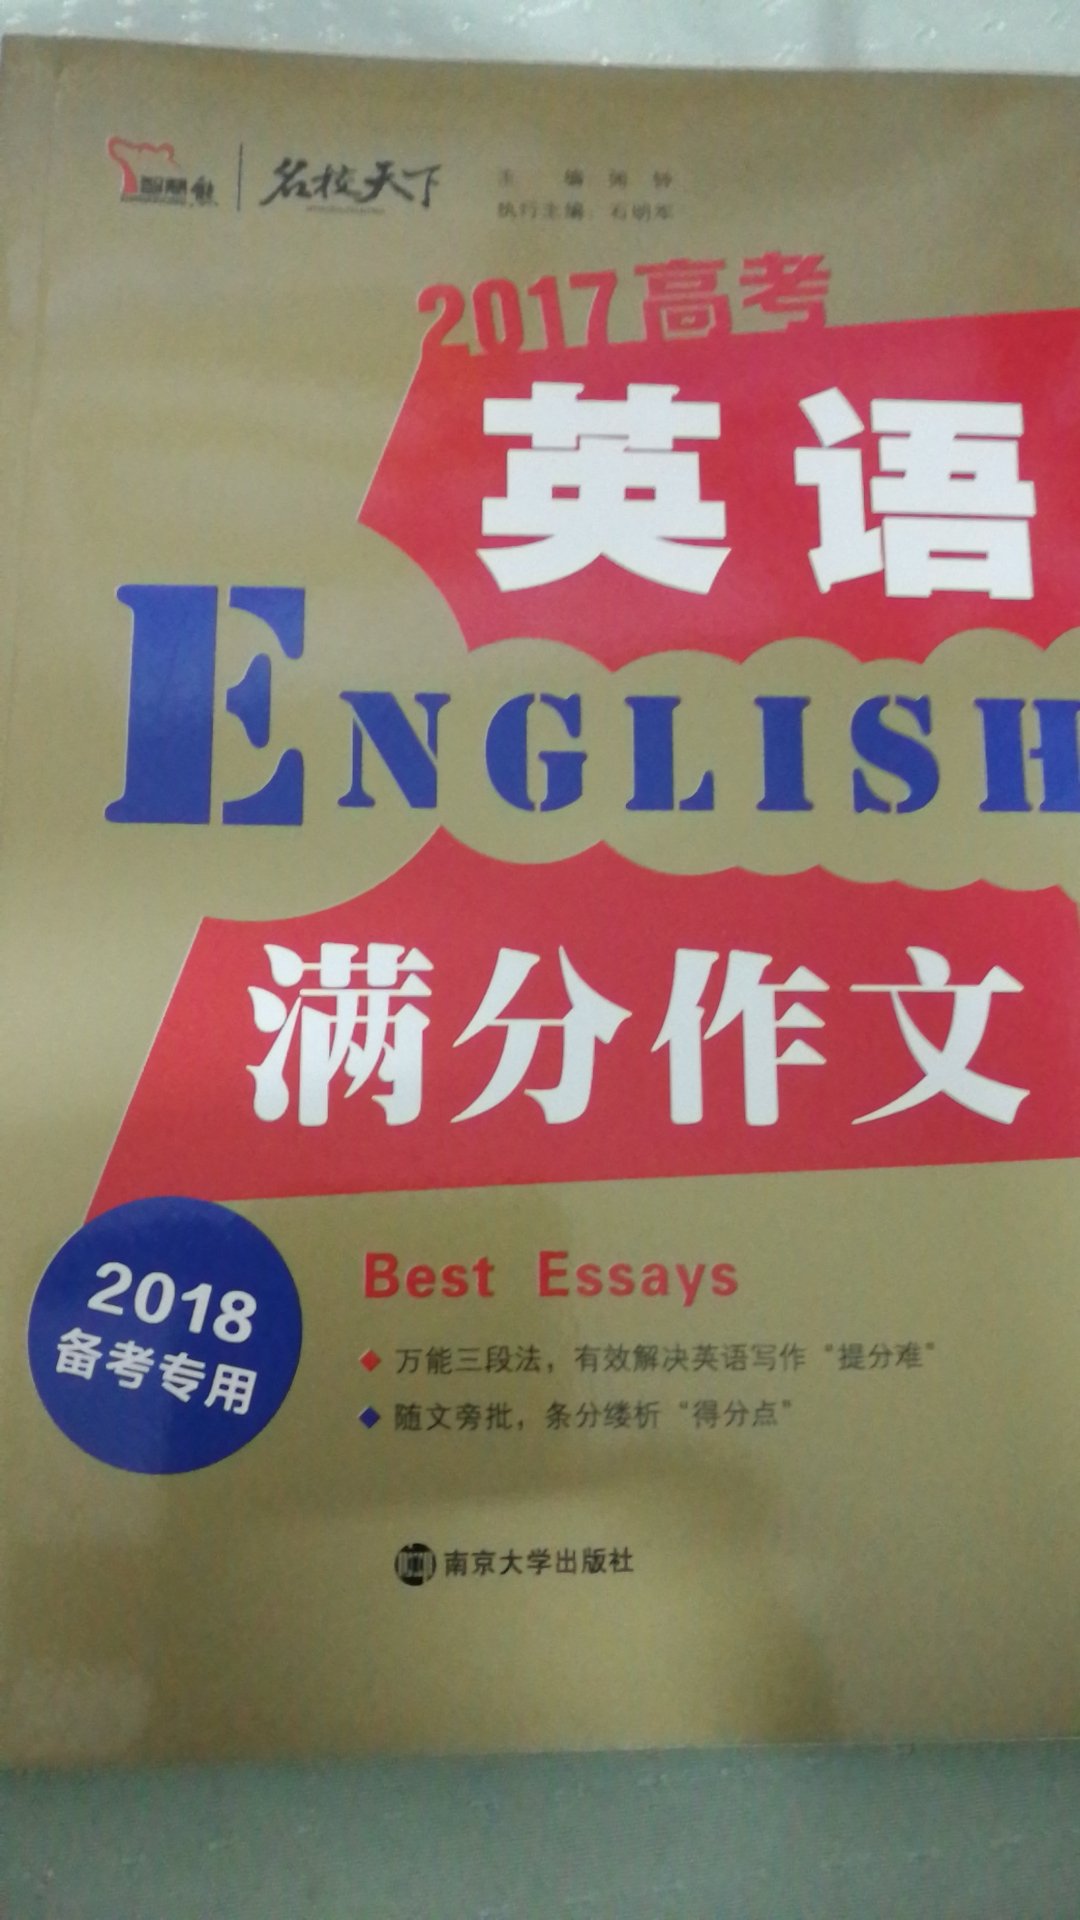 英语满分作文辅导书，对提高英语写作有帮助。